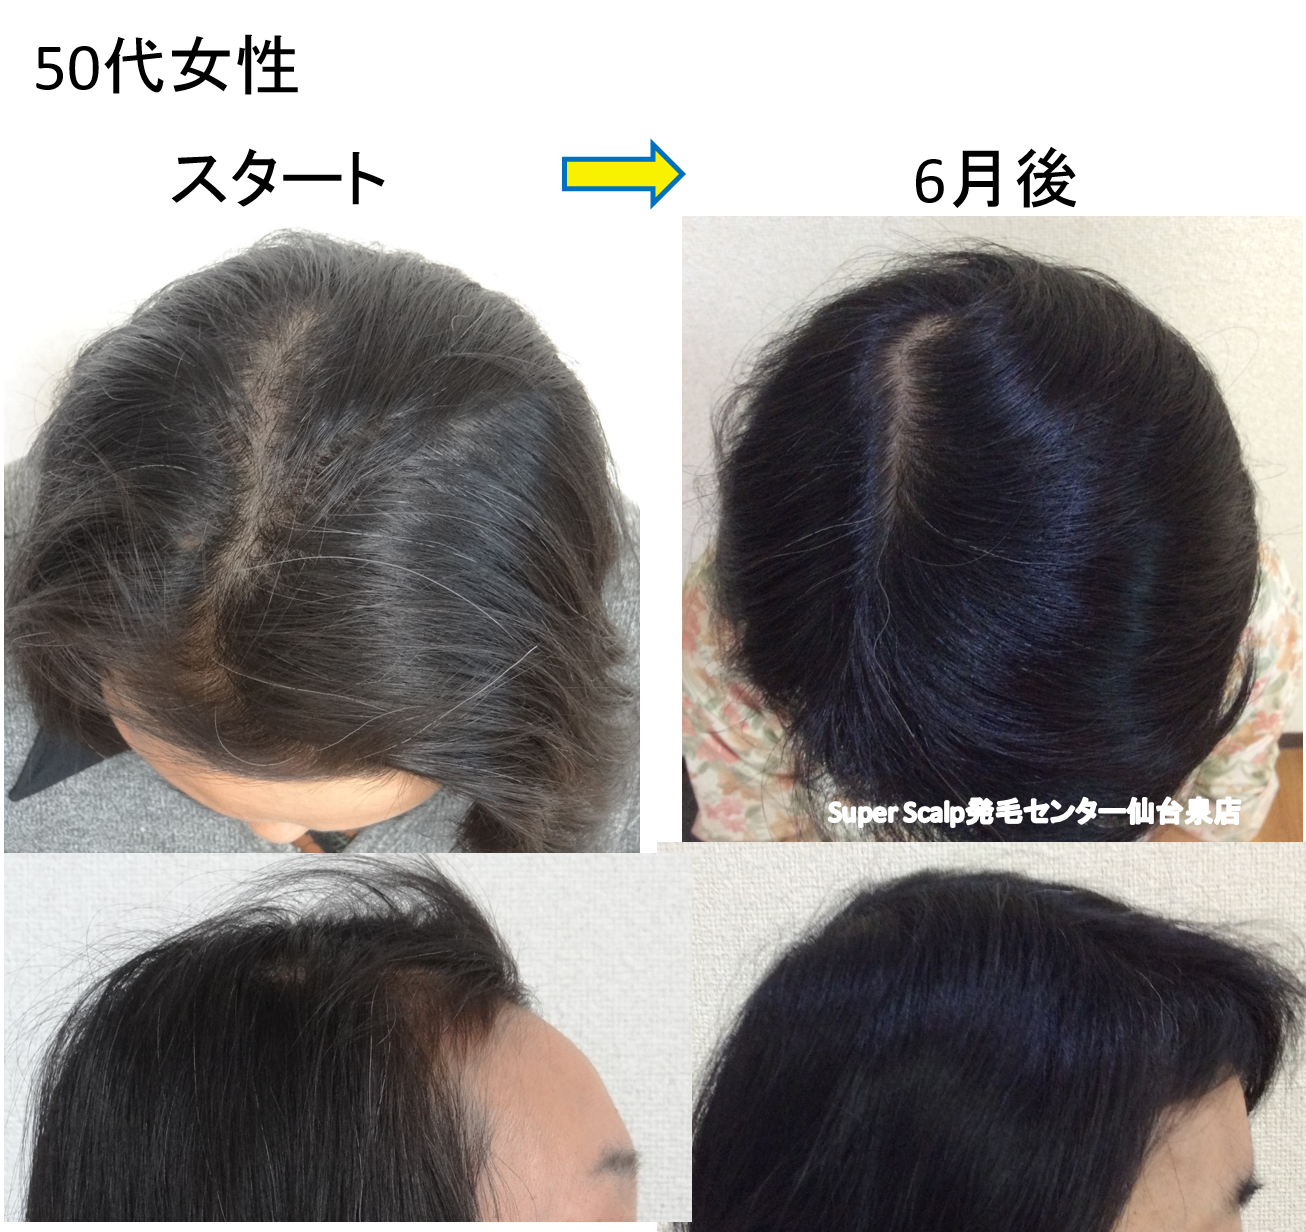 大崎市女性 病院でもなおらなかった円形脱毛が2ヶ月で改善